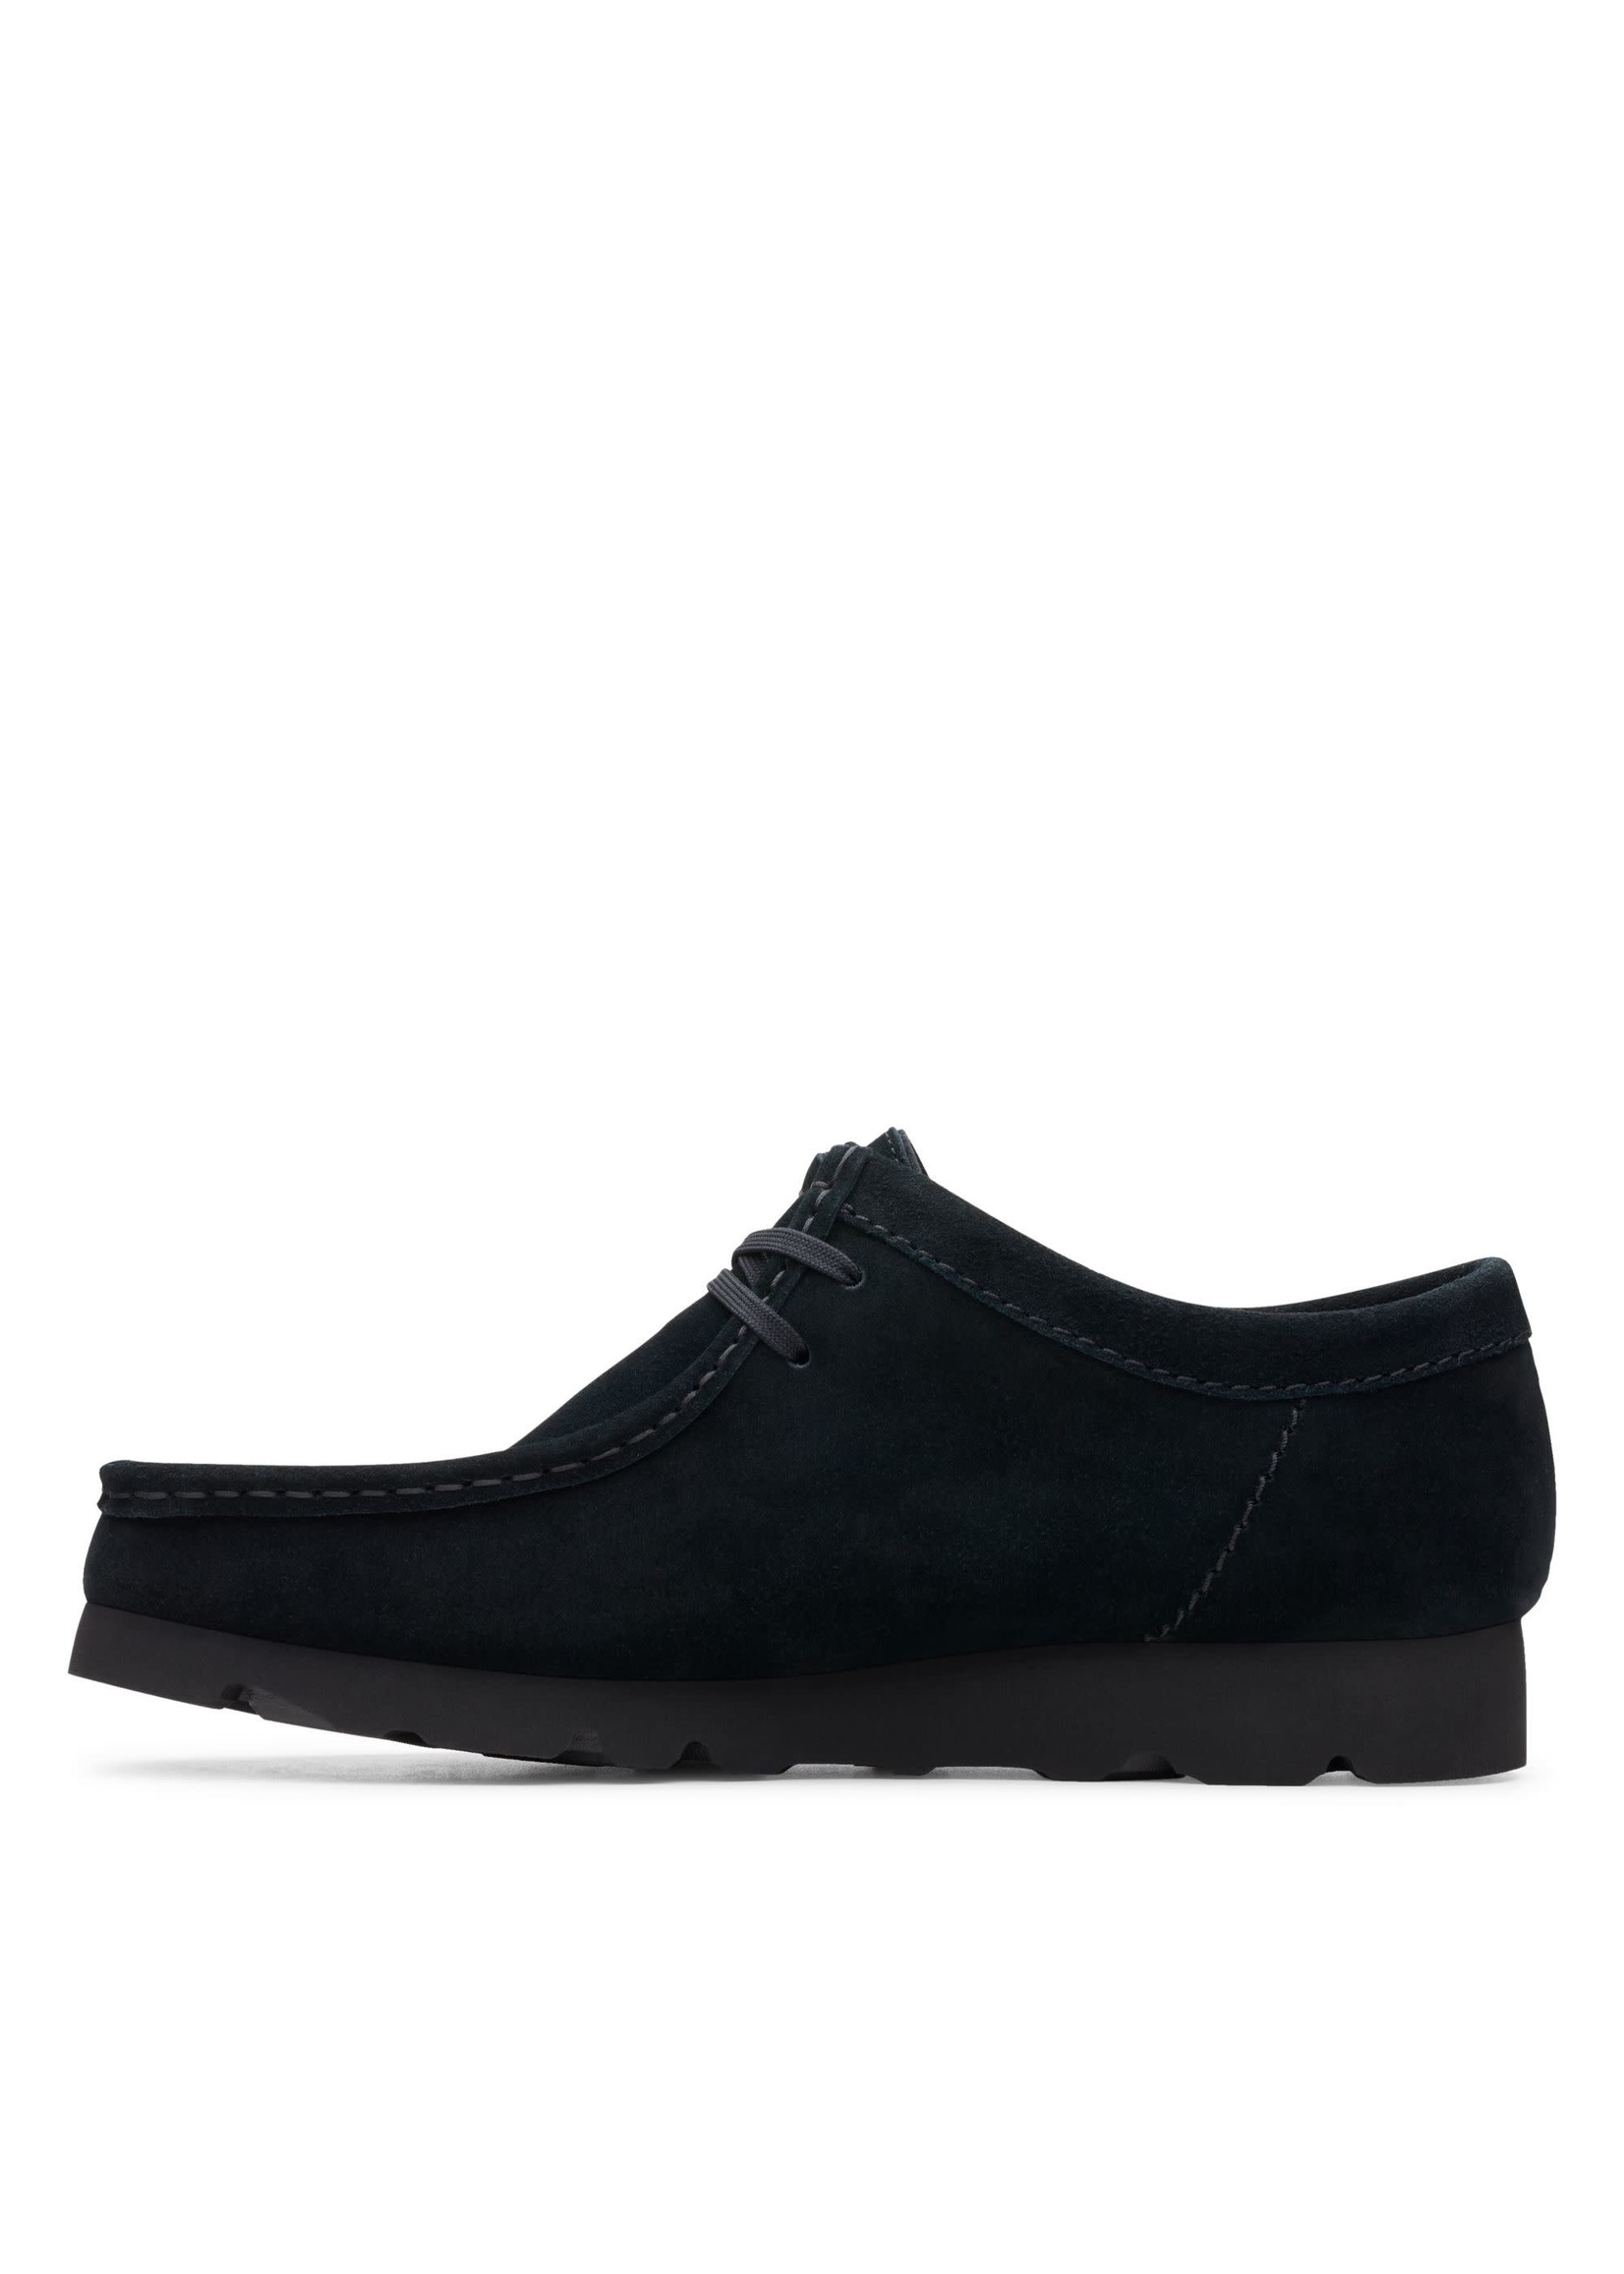 Men's Wallabee GTX Shoes, Black Suede - SHOE PLUS - Low Prices ...